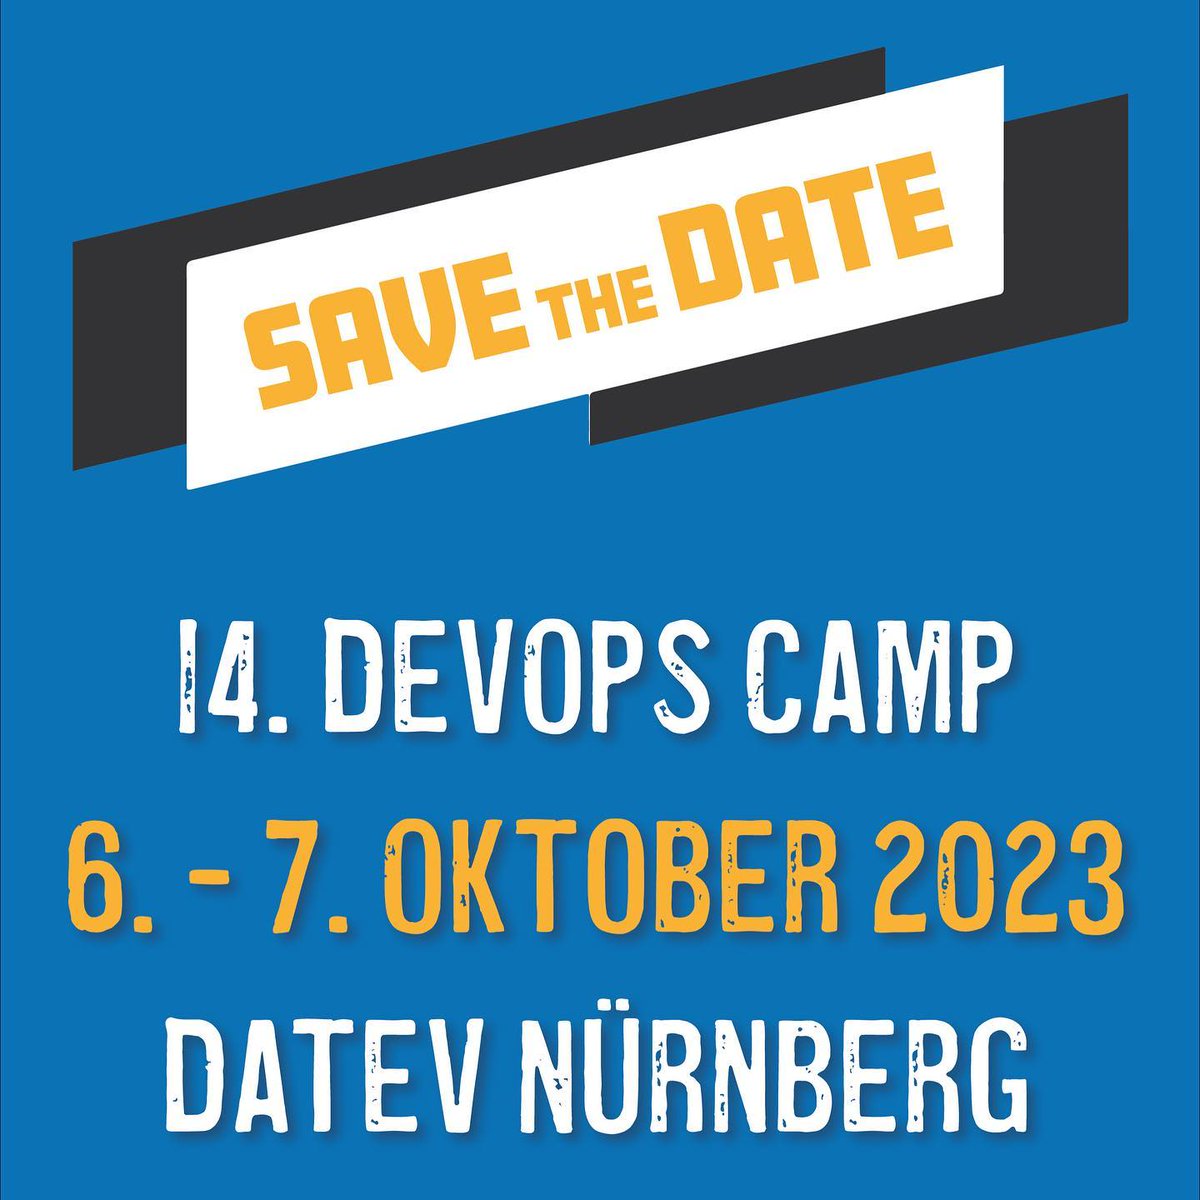 Am 6. - 7. Oktober geht‘s weiter mit der 14. Ausgabe des DevOps Camps. Die @DATEV unterstützt uns bereits seit einigen Jahren und stellt diesmal den DATEV IT-Campus als Veranstaltungsort zur Verfügung. 🙏 #dvoc23 #devopscamp #nuernbergdigital #datev